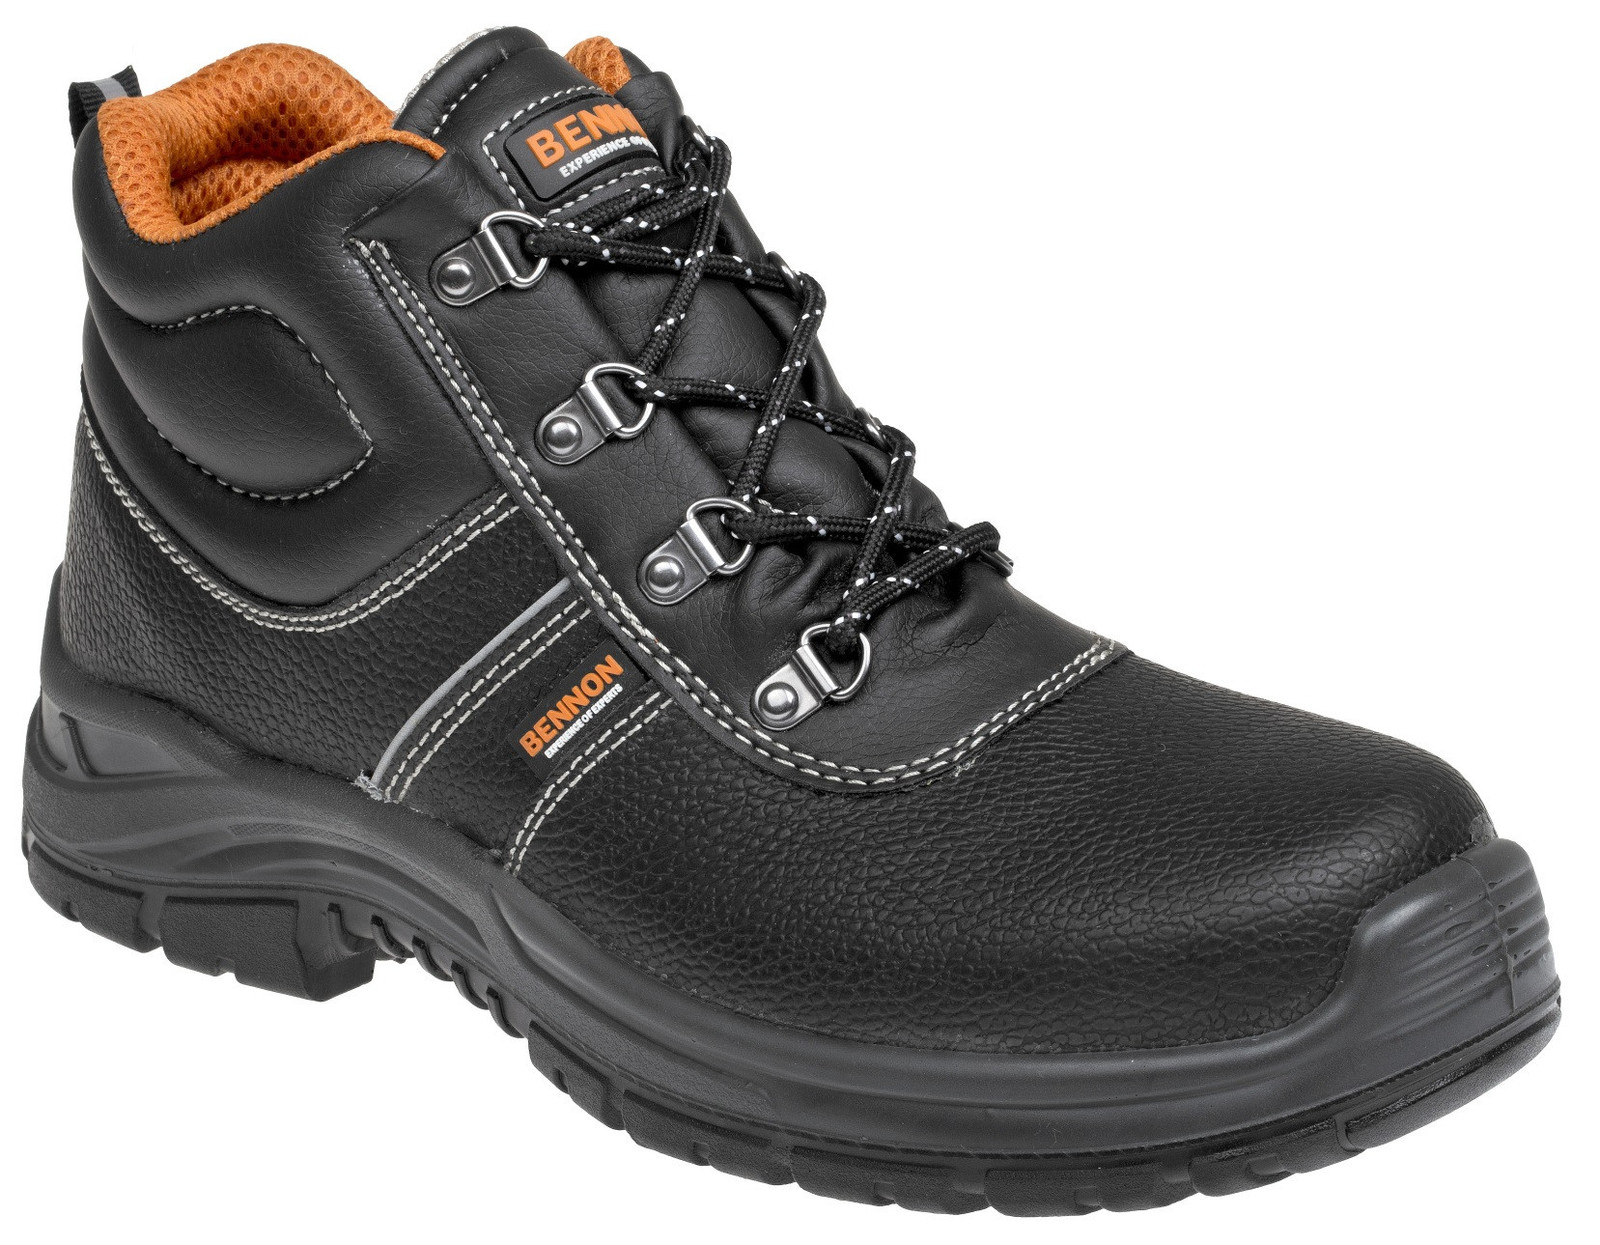 Bezpečnostná obuv Bennon Basic S3 - veľkosť: 35, farba: čierna